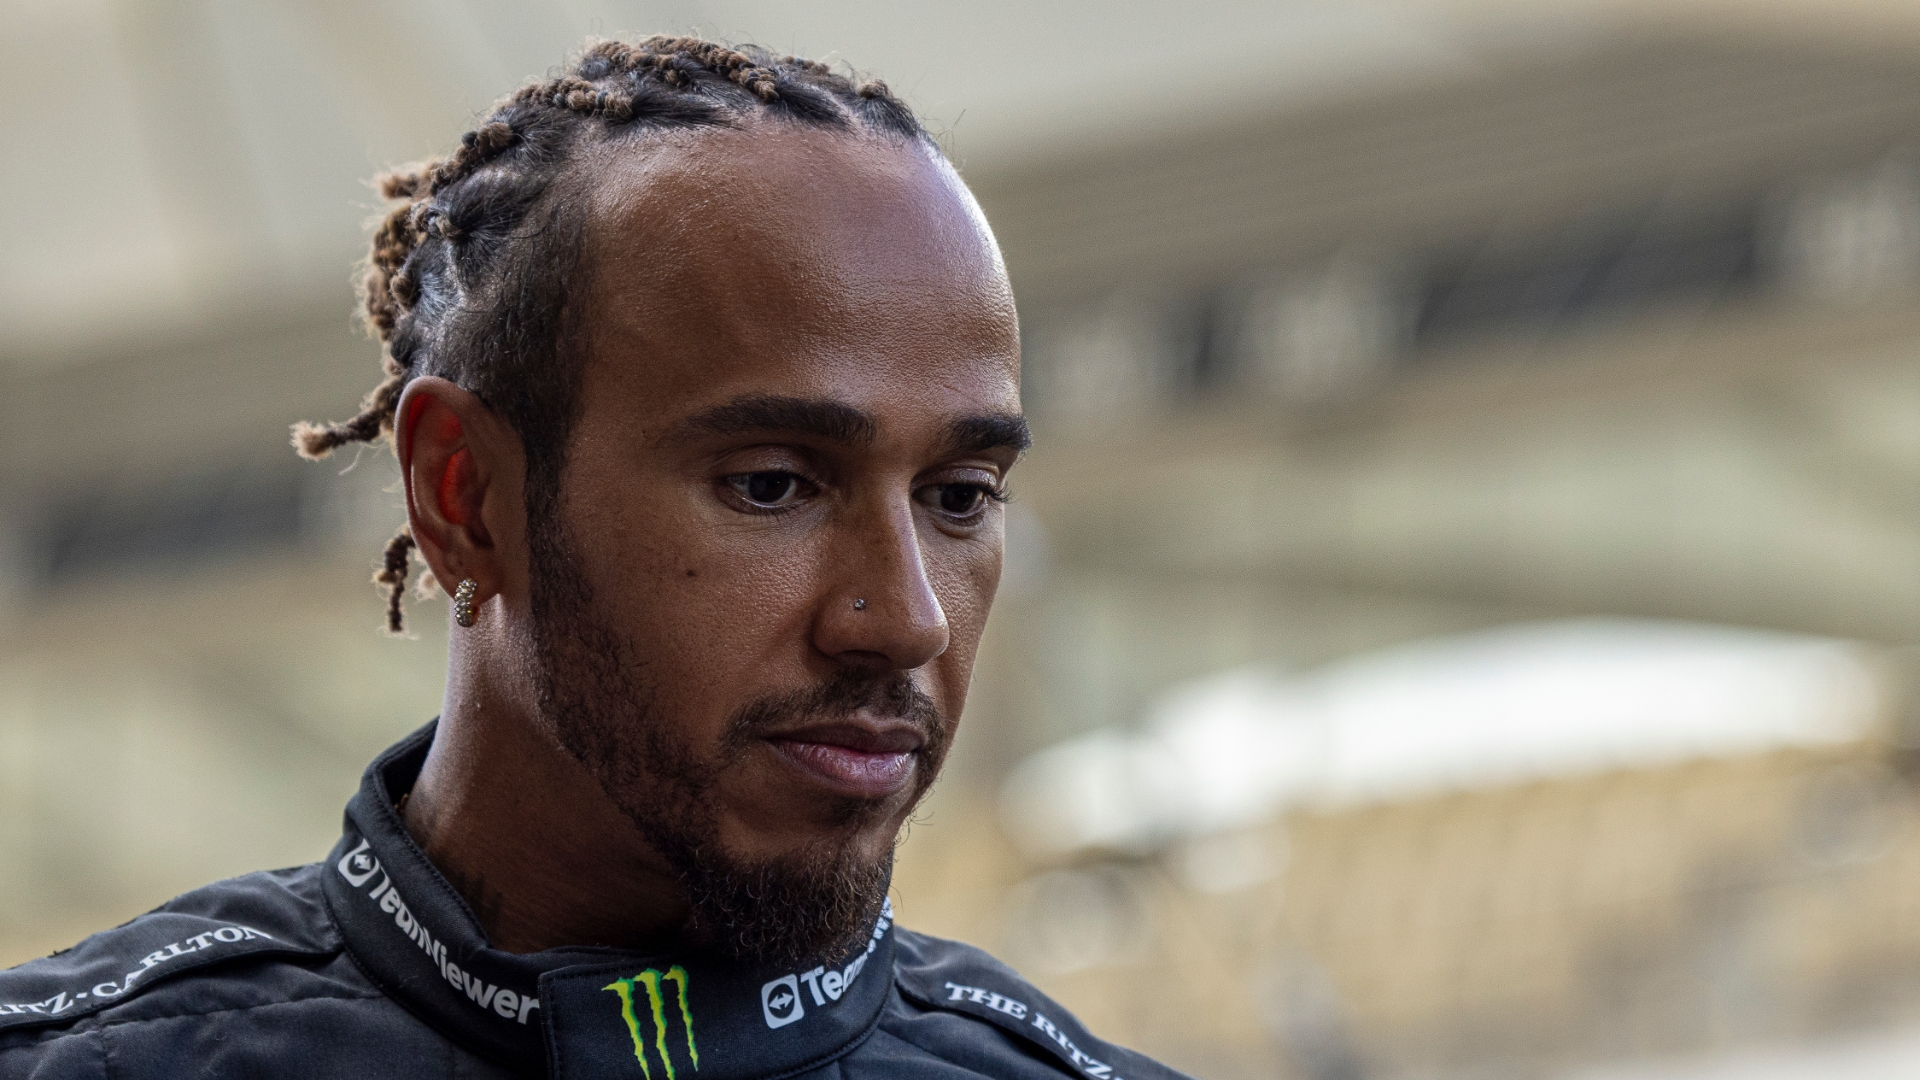 Has Lewis Hamilton lost trust in Mercedes?